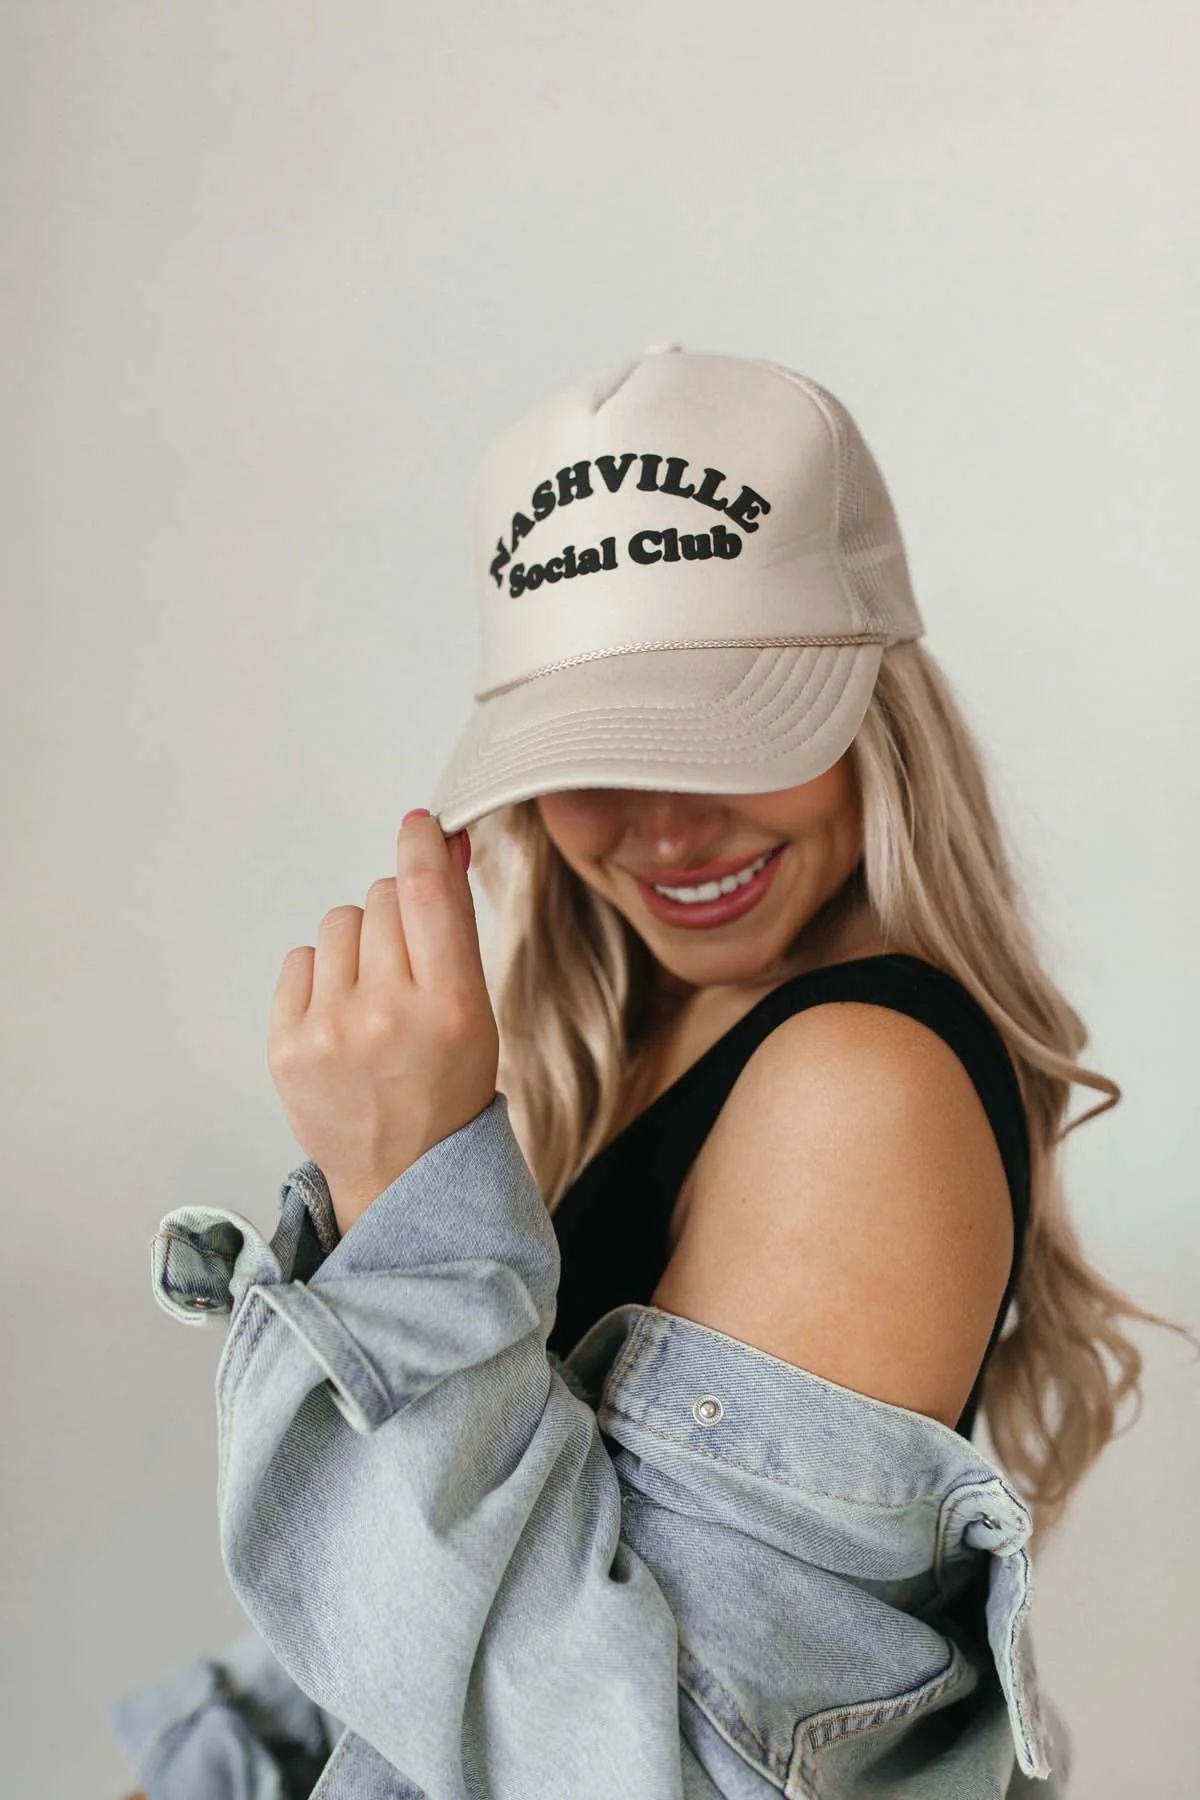 Nashville Social Club Trucker Hat | The Post